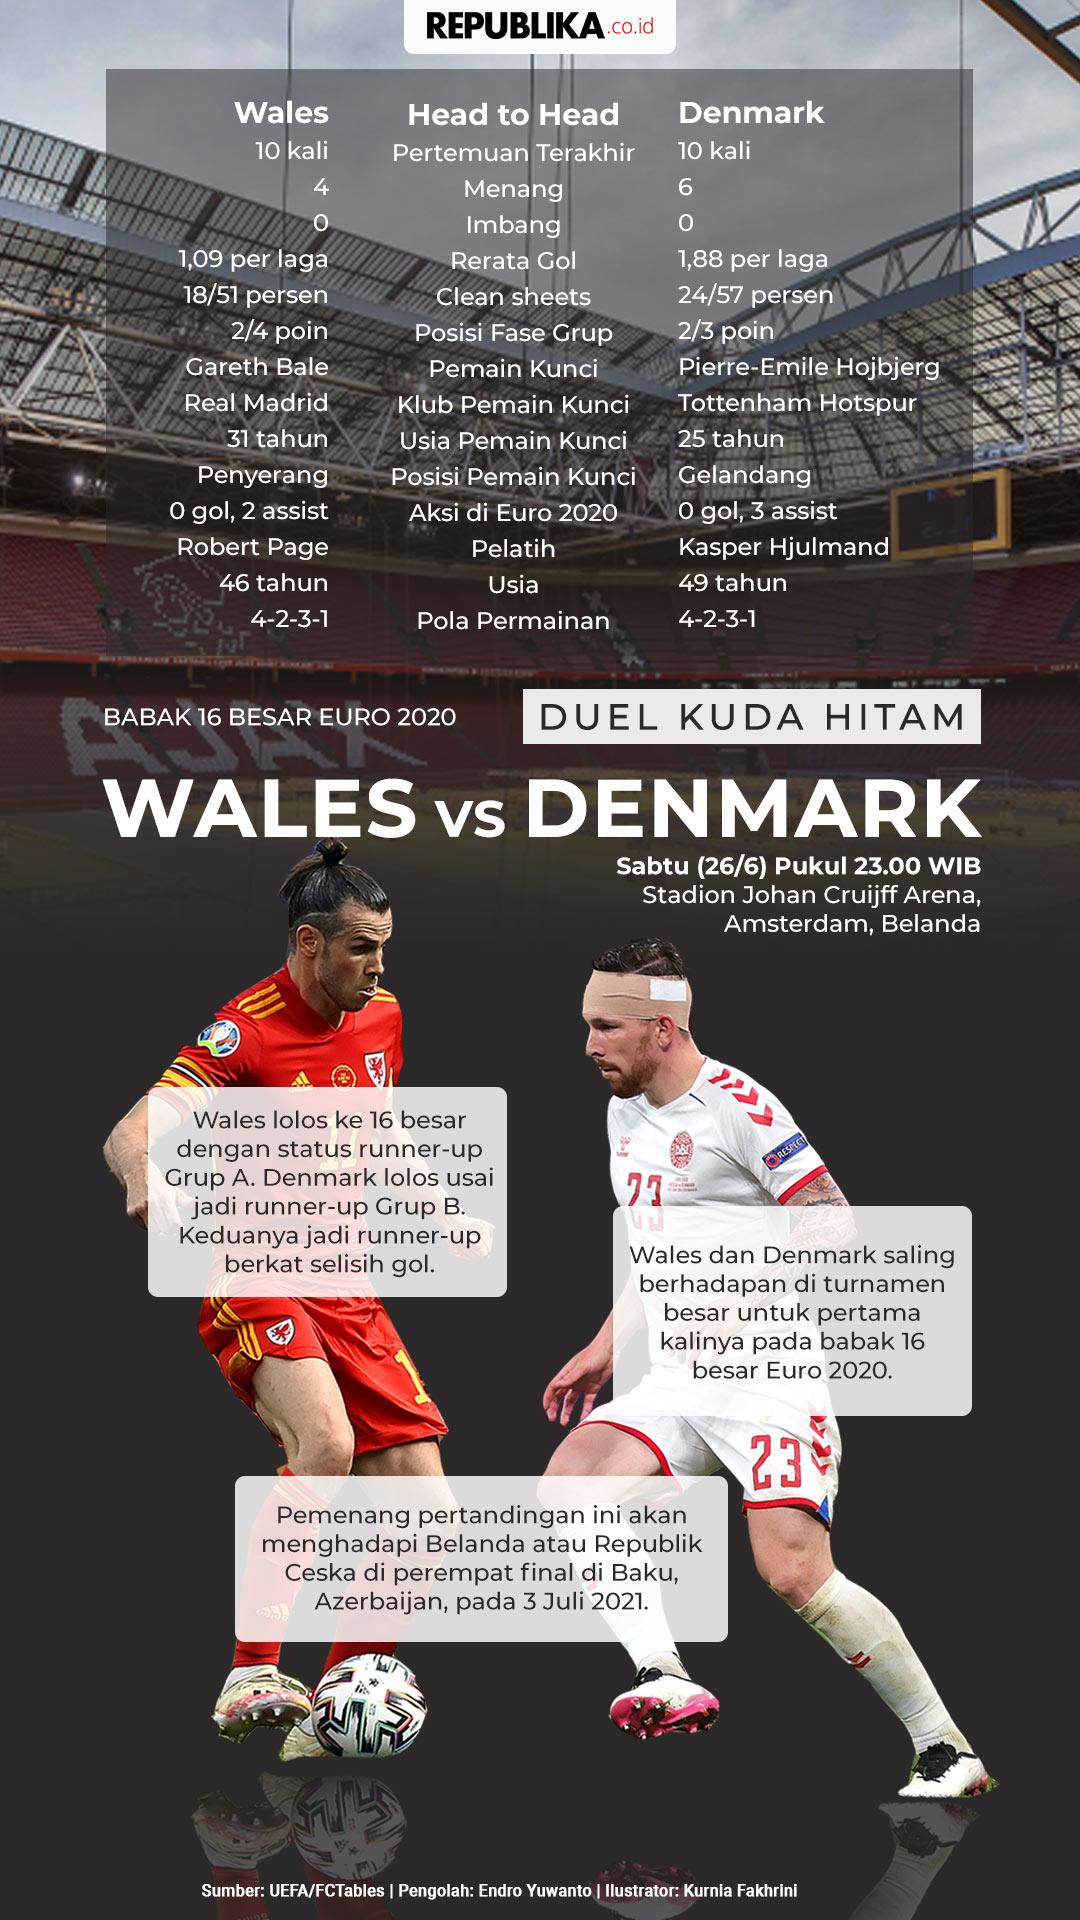 Wales to head vs denmark head Head